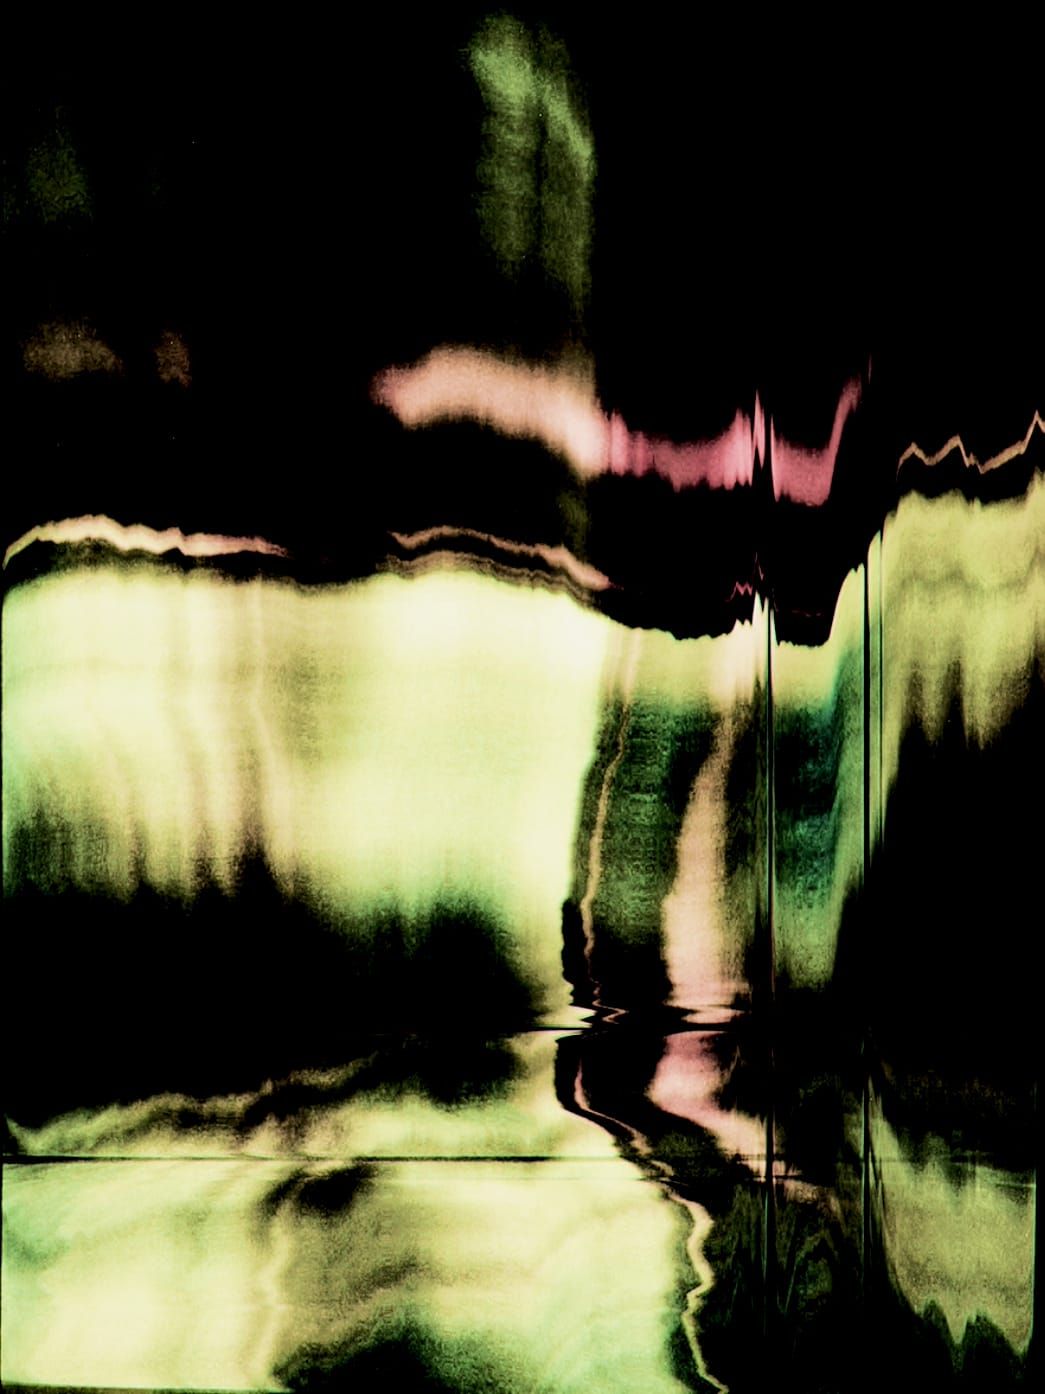 Fotografía, Scanography by Michael Monney aka acylmx, Imagen abstracta en verde y rosa